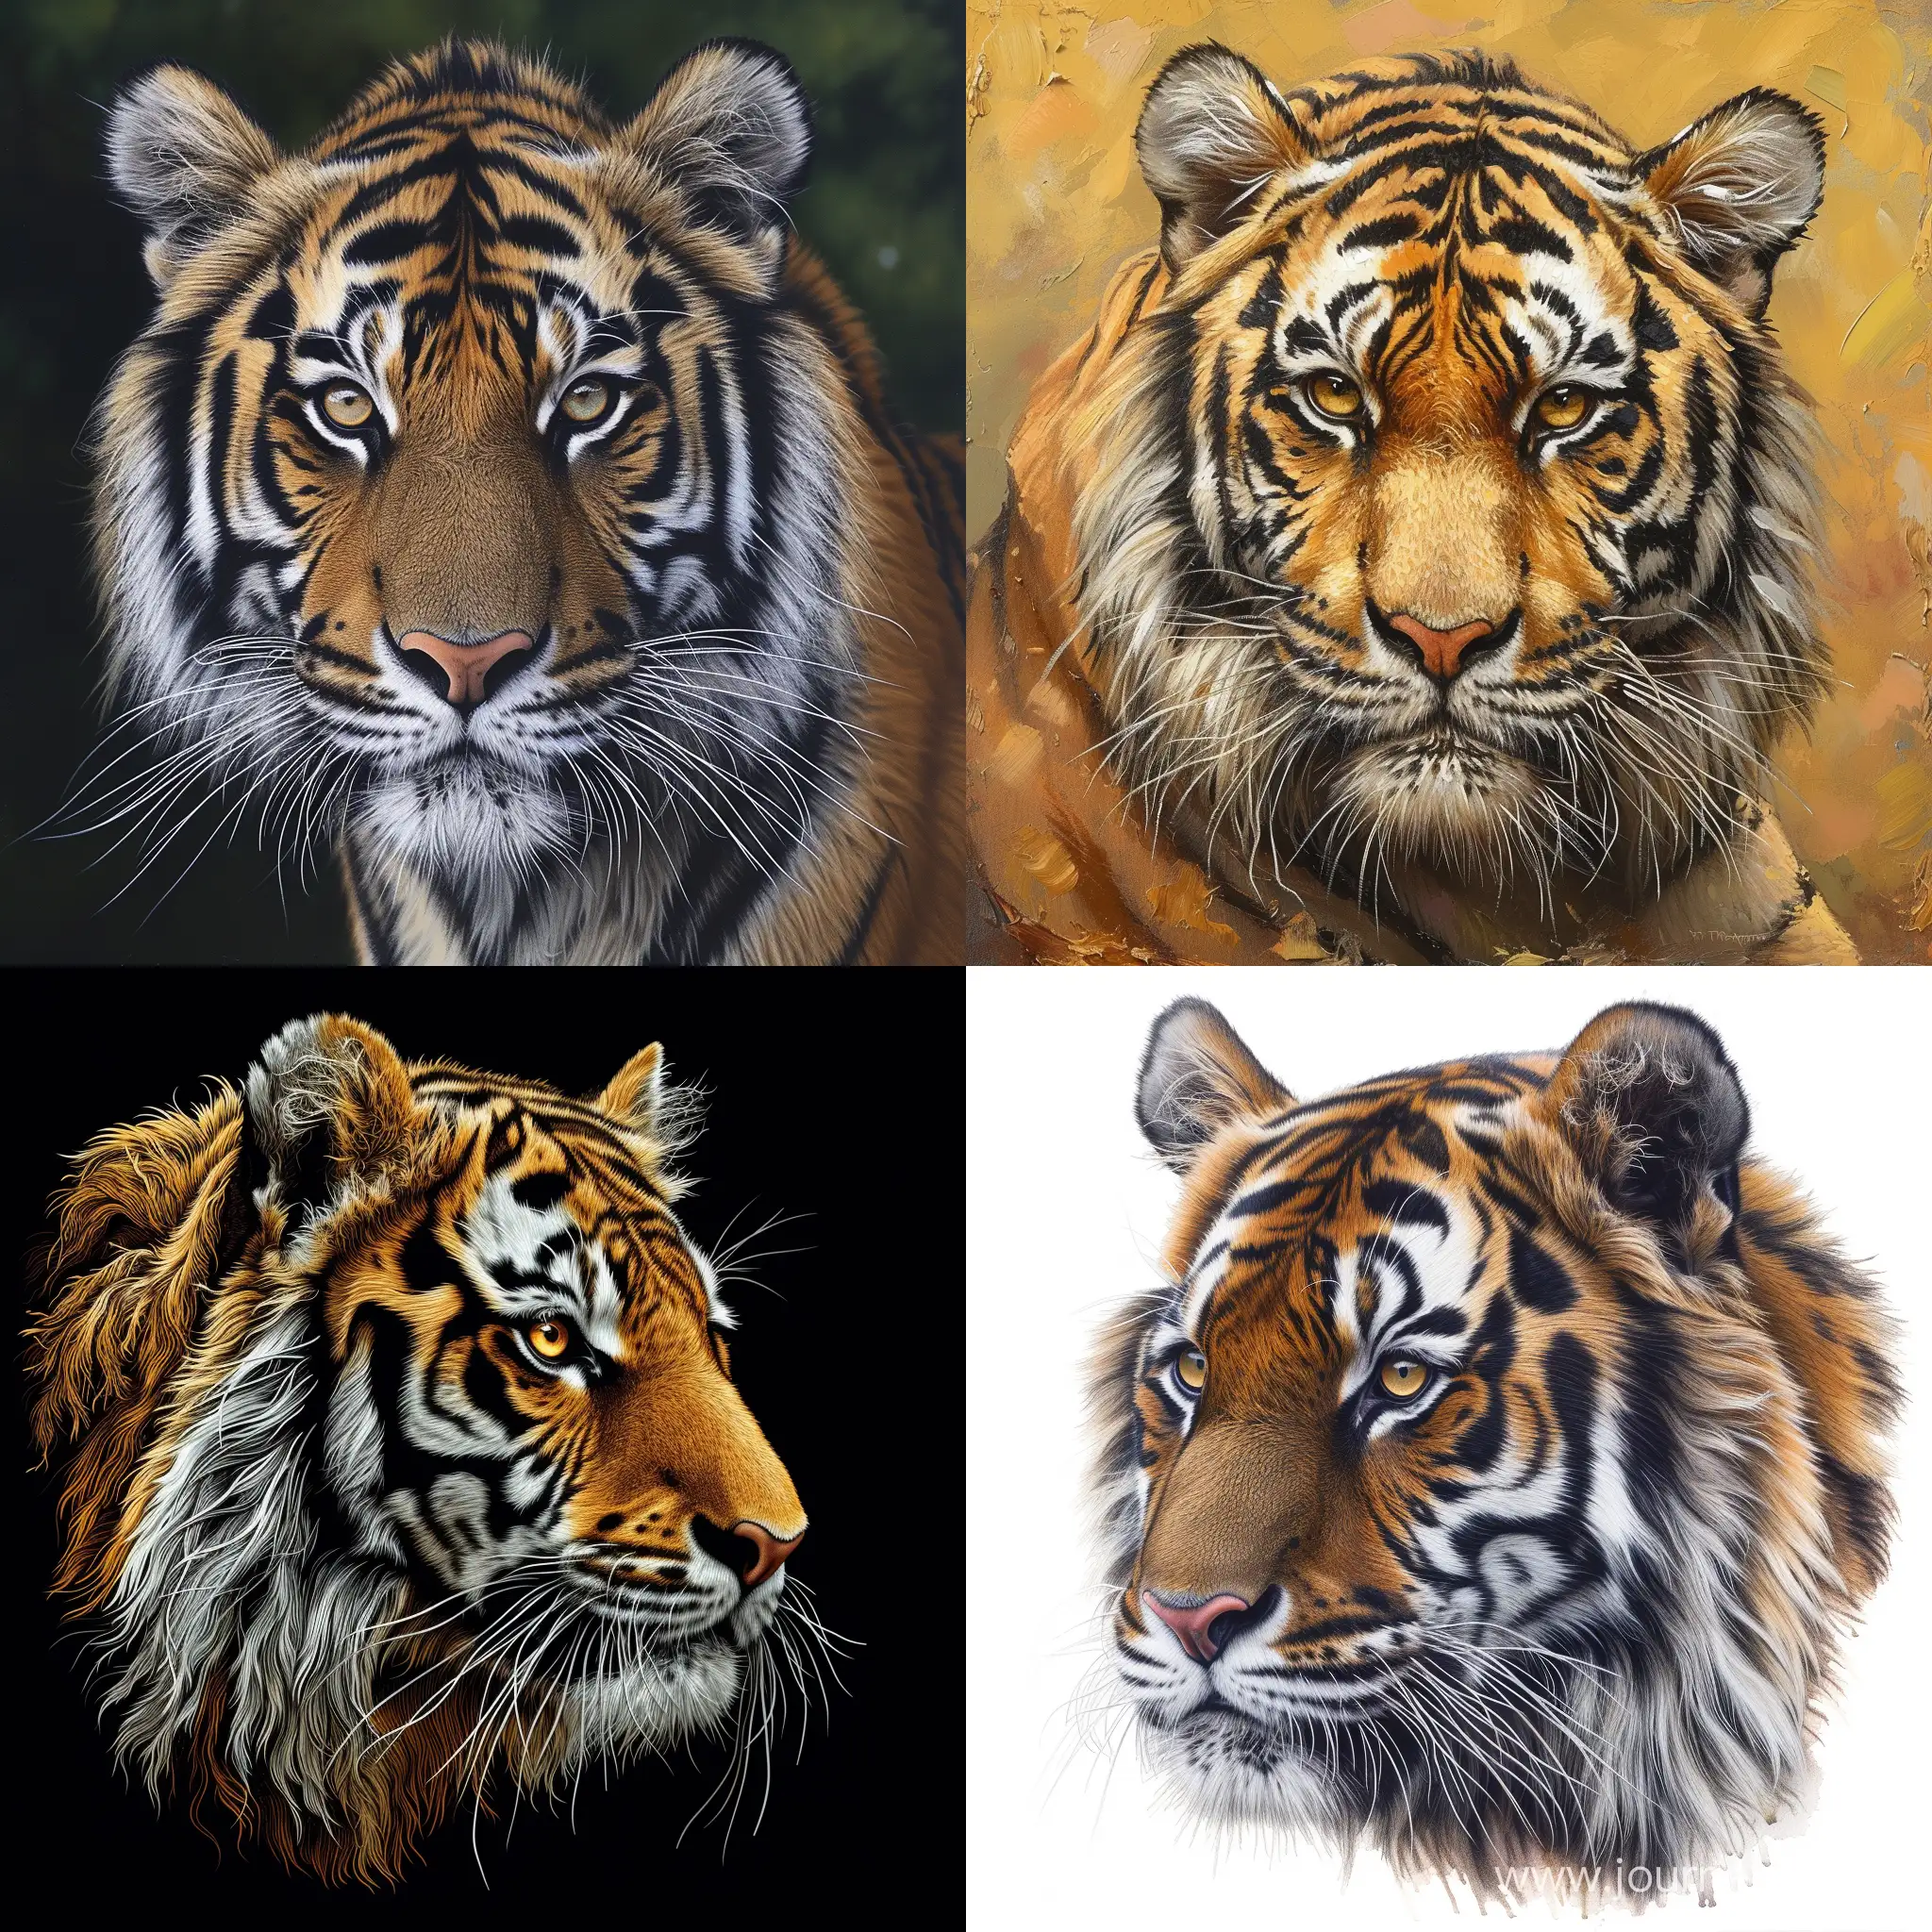 Majestic-Tiger-Portrait-in-Vibrant-Colors